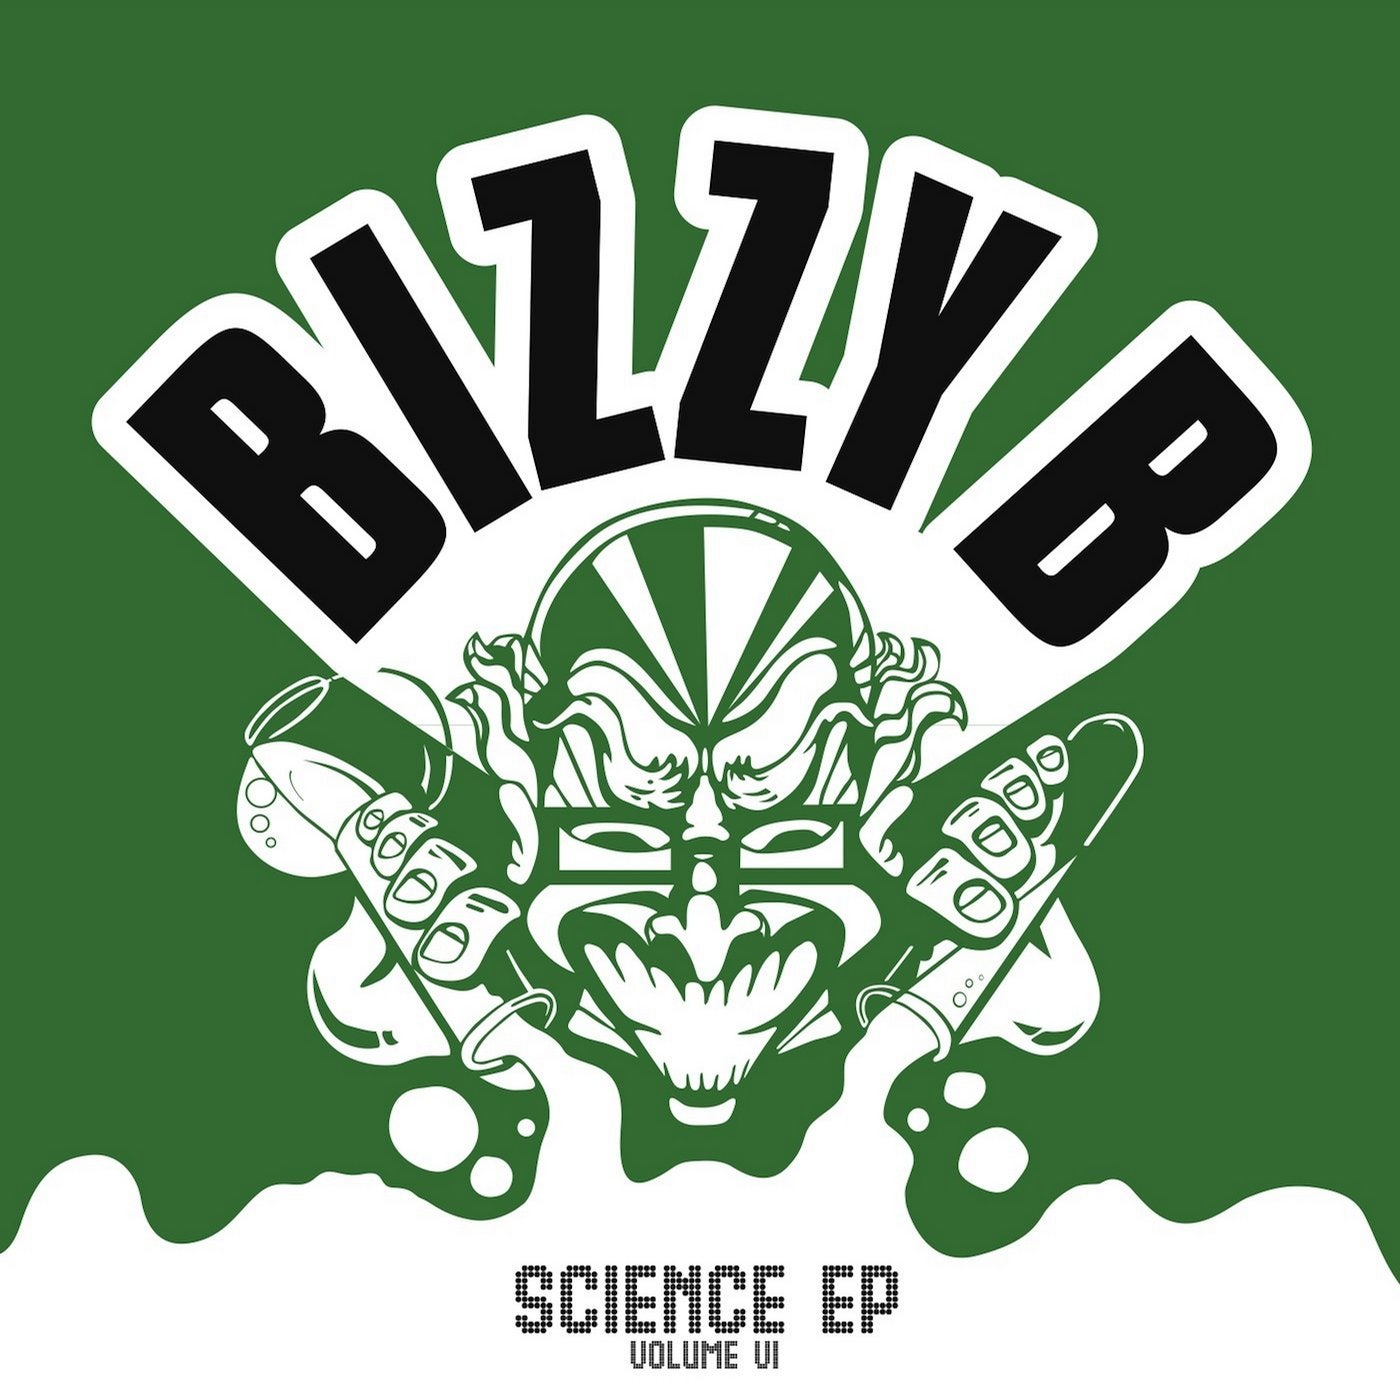 Science EP - Volume VI